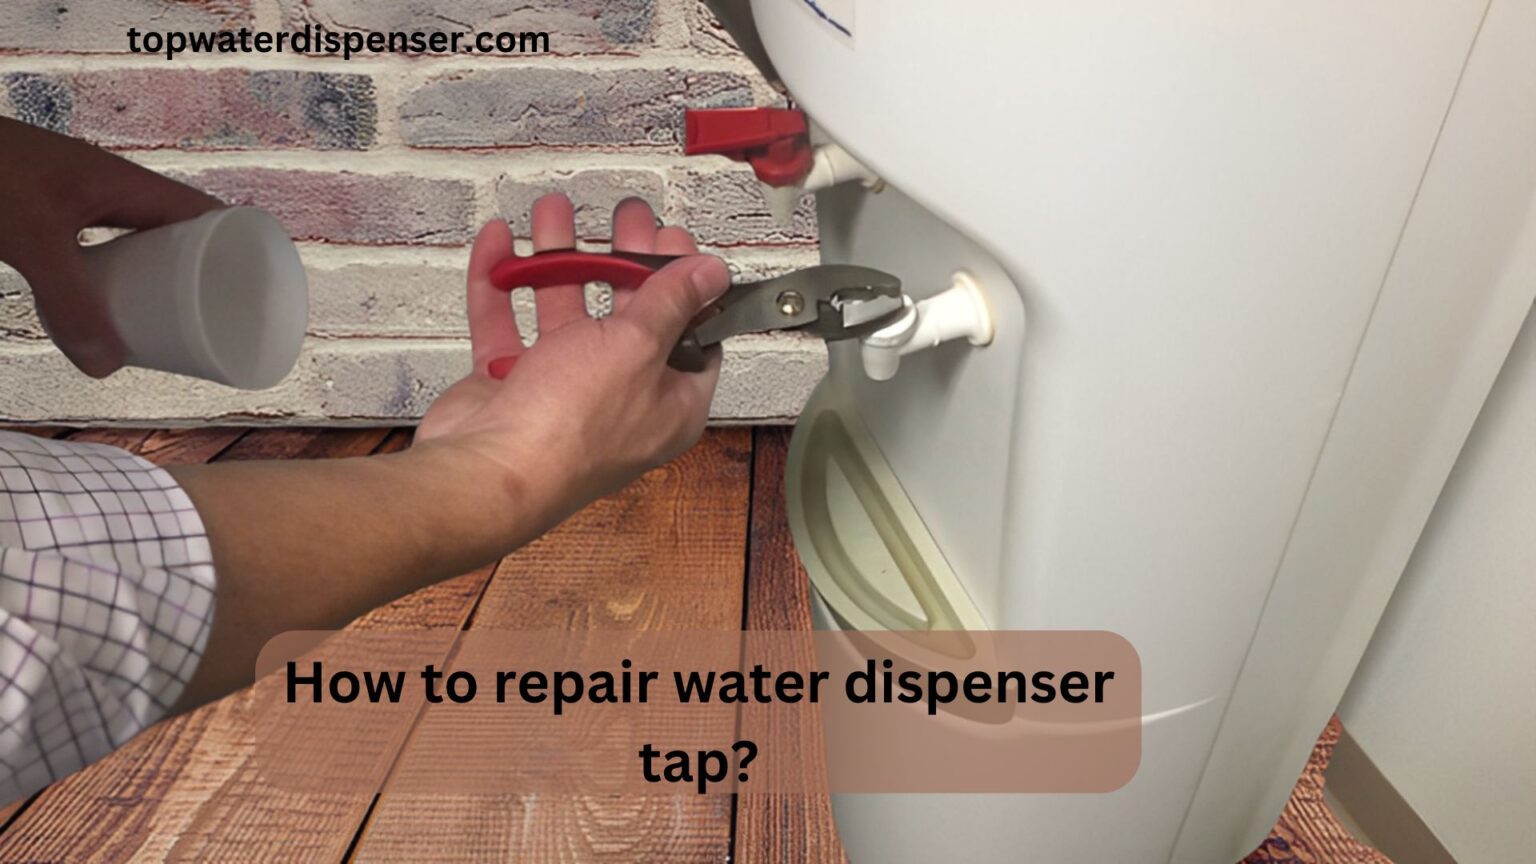 How to repair water dispenser tap?